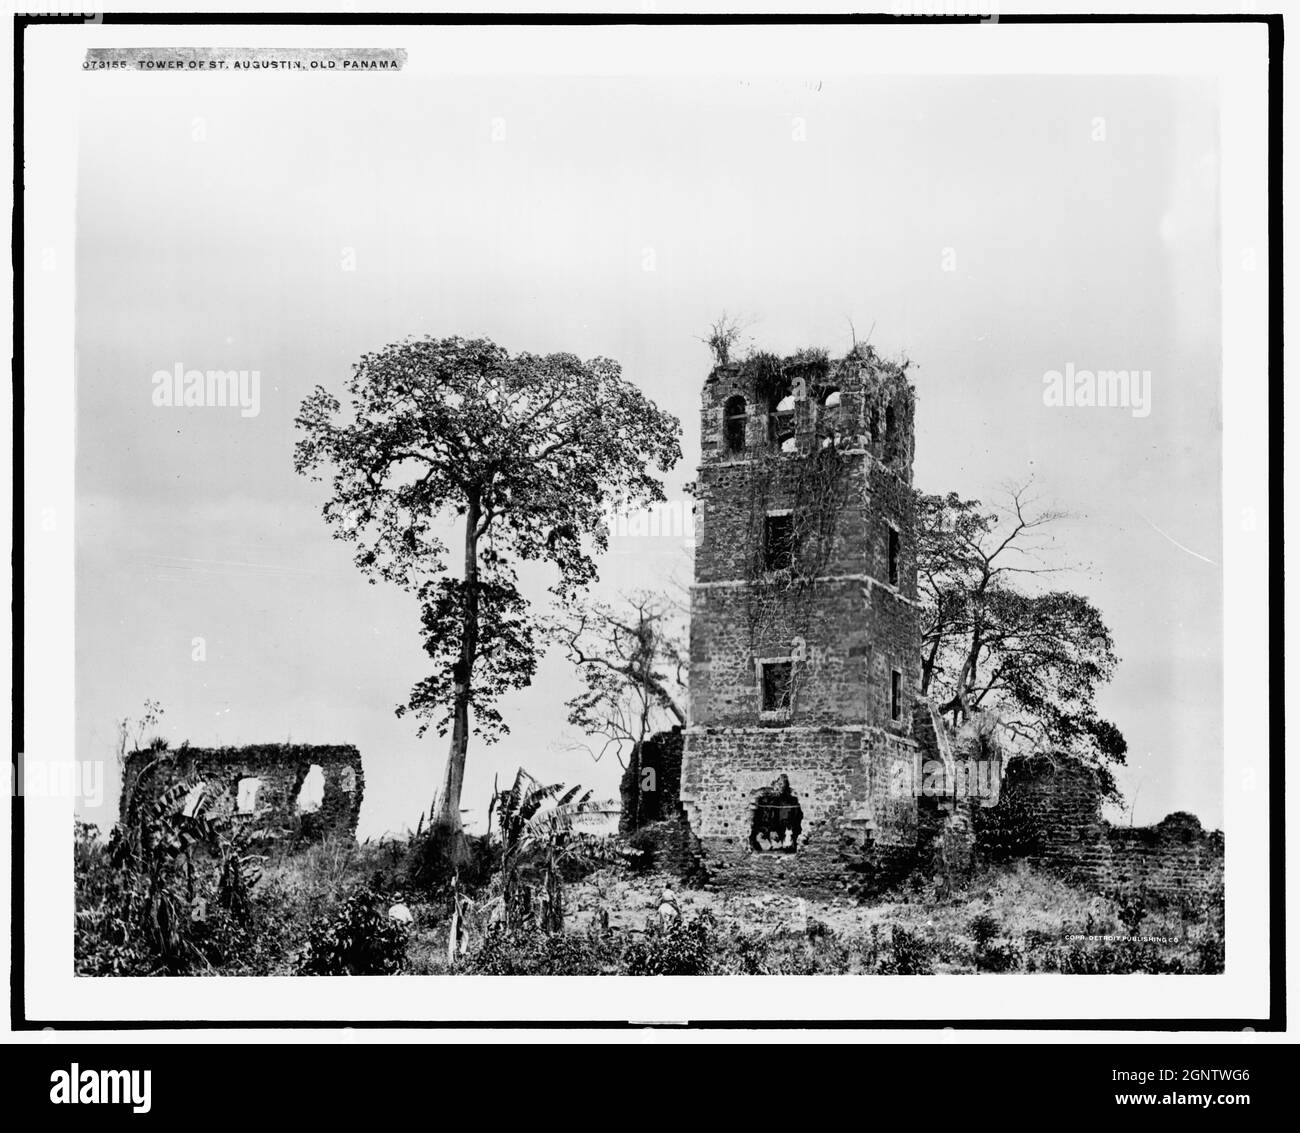 Vintage Schwarz-Weiß-Fotografie des Turms von St. Augustin (Kathedrale), Alt-Panama um 1910-1920, Mittelamerika Stockfoto